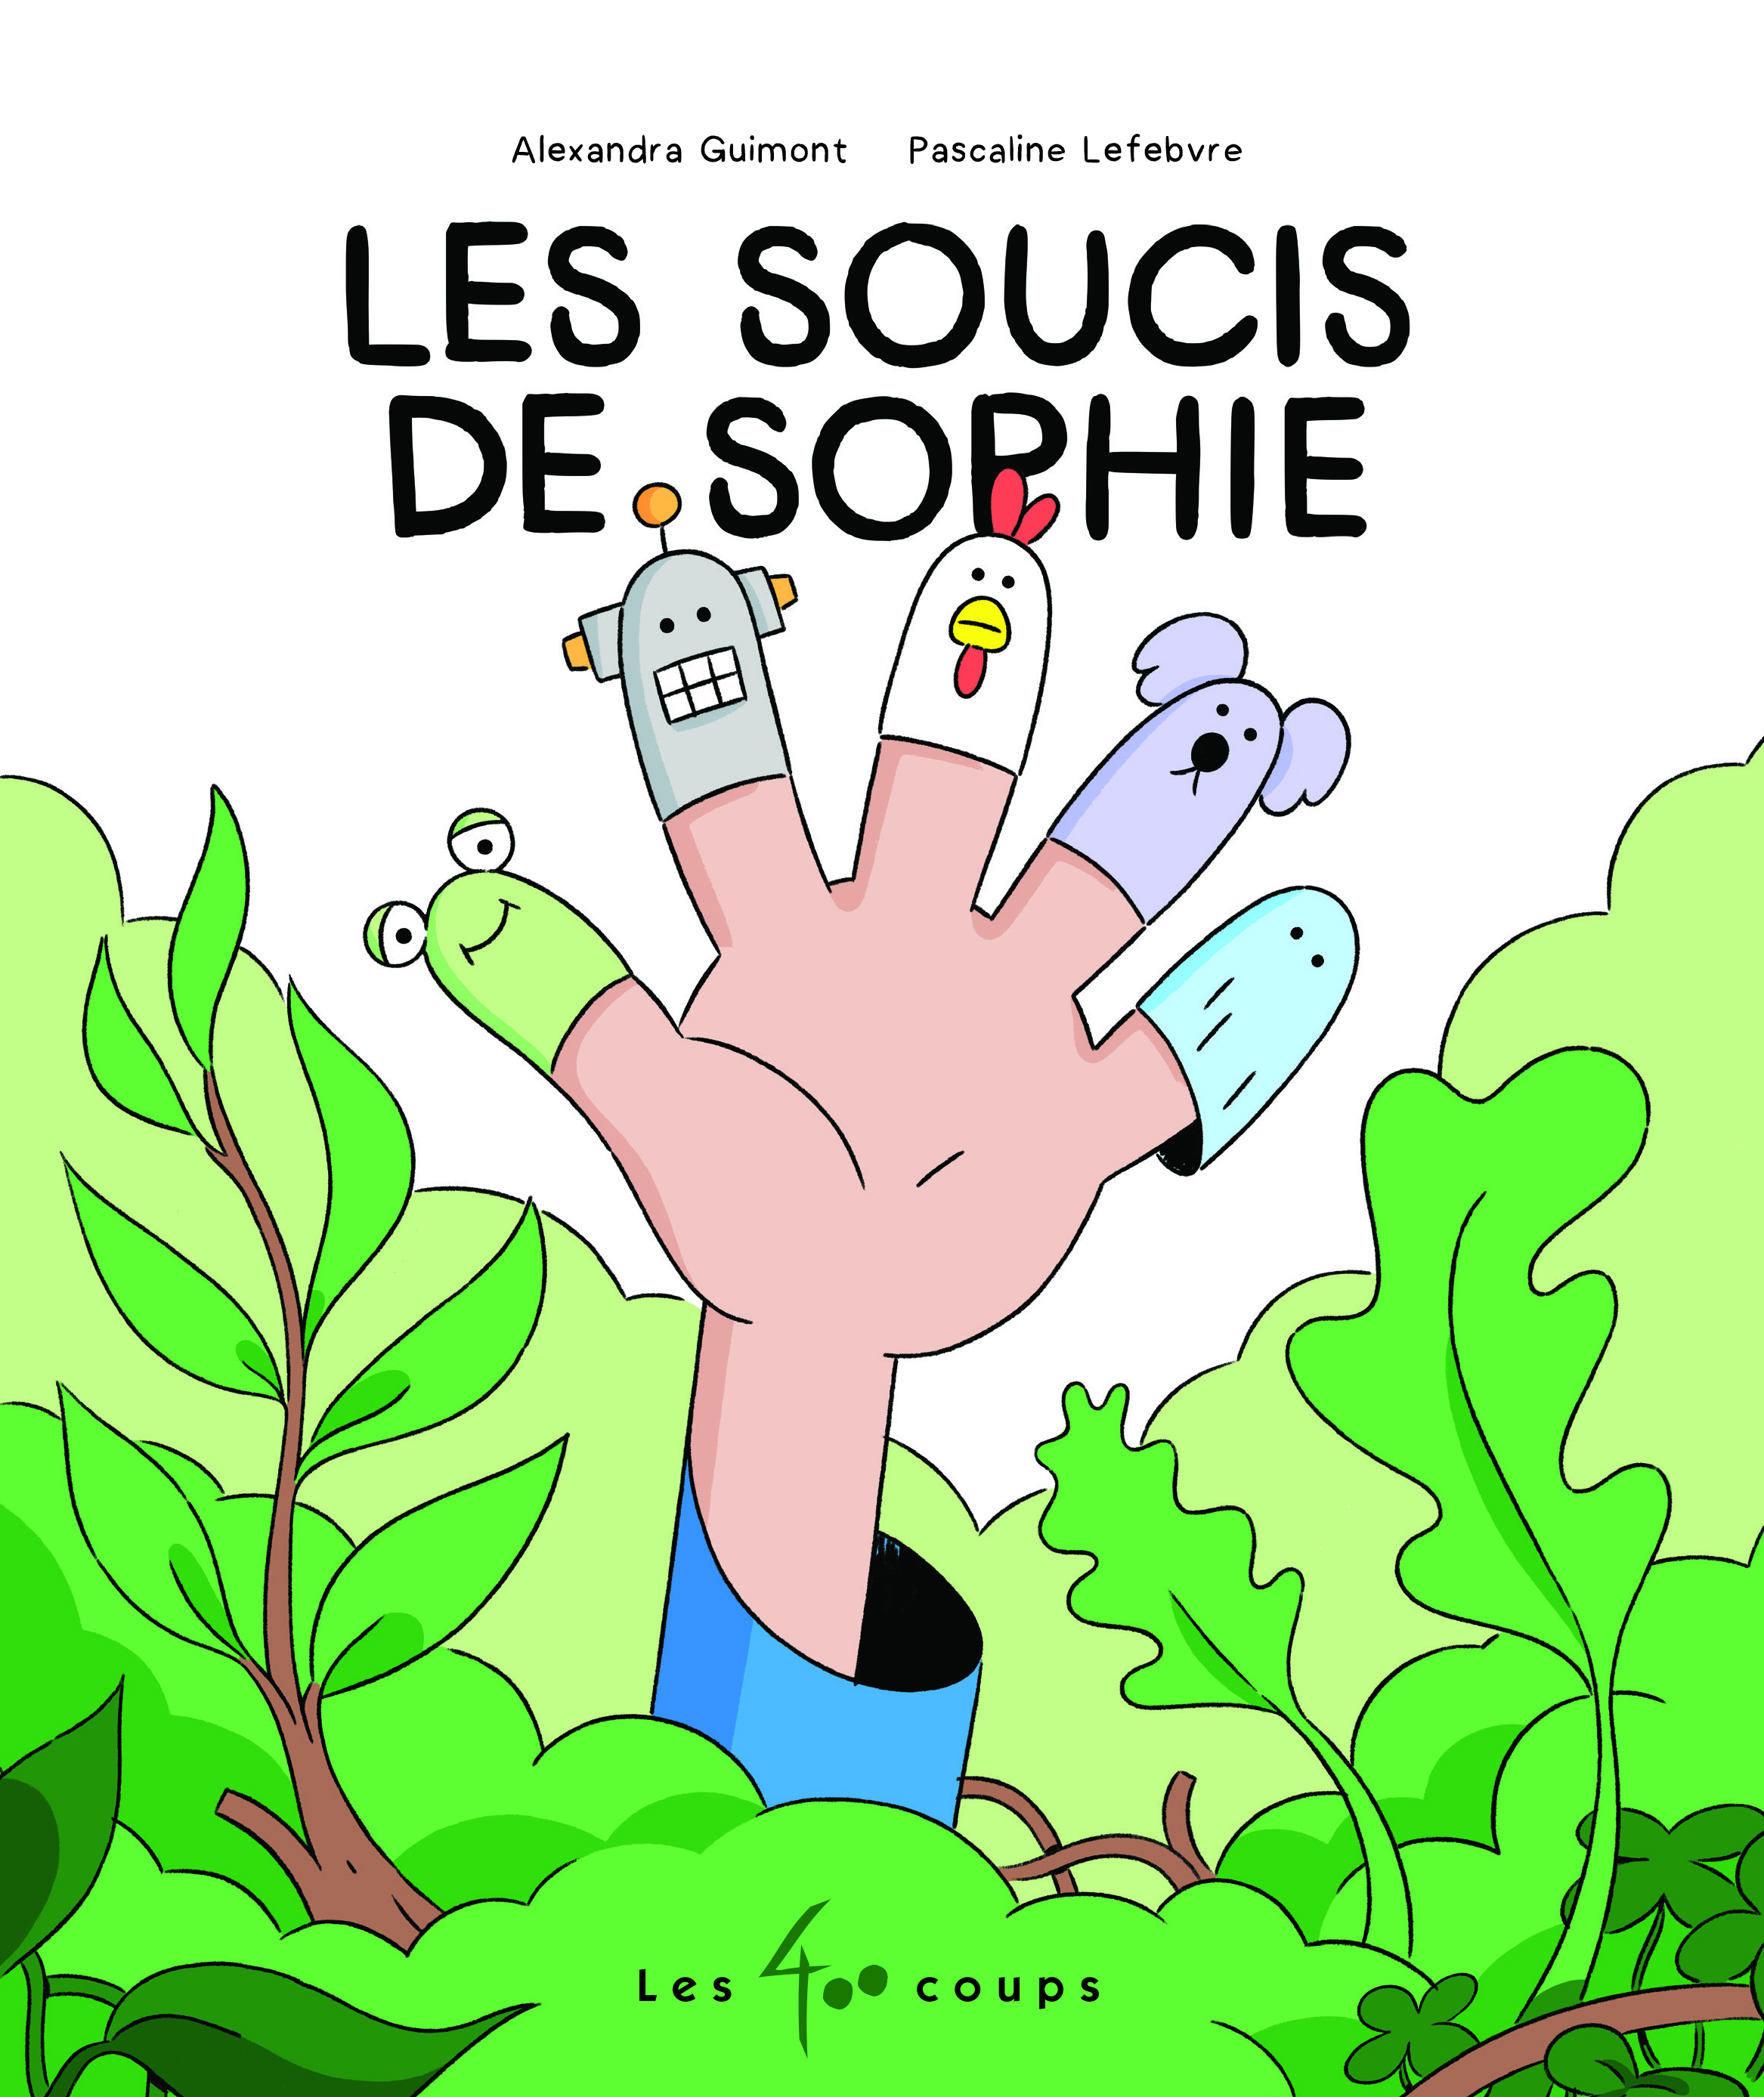 Soucis de Sophie, Les - Éditions les 400 coups